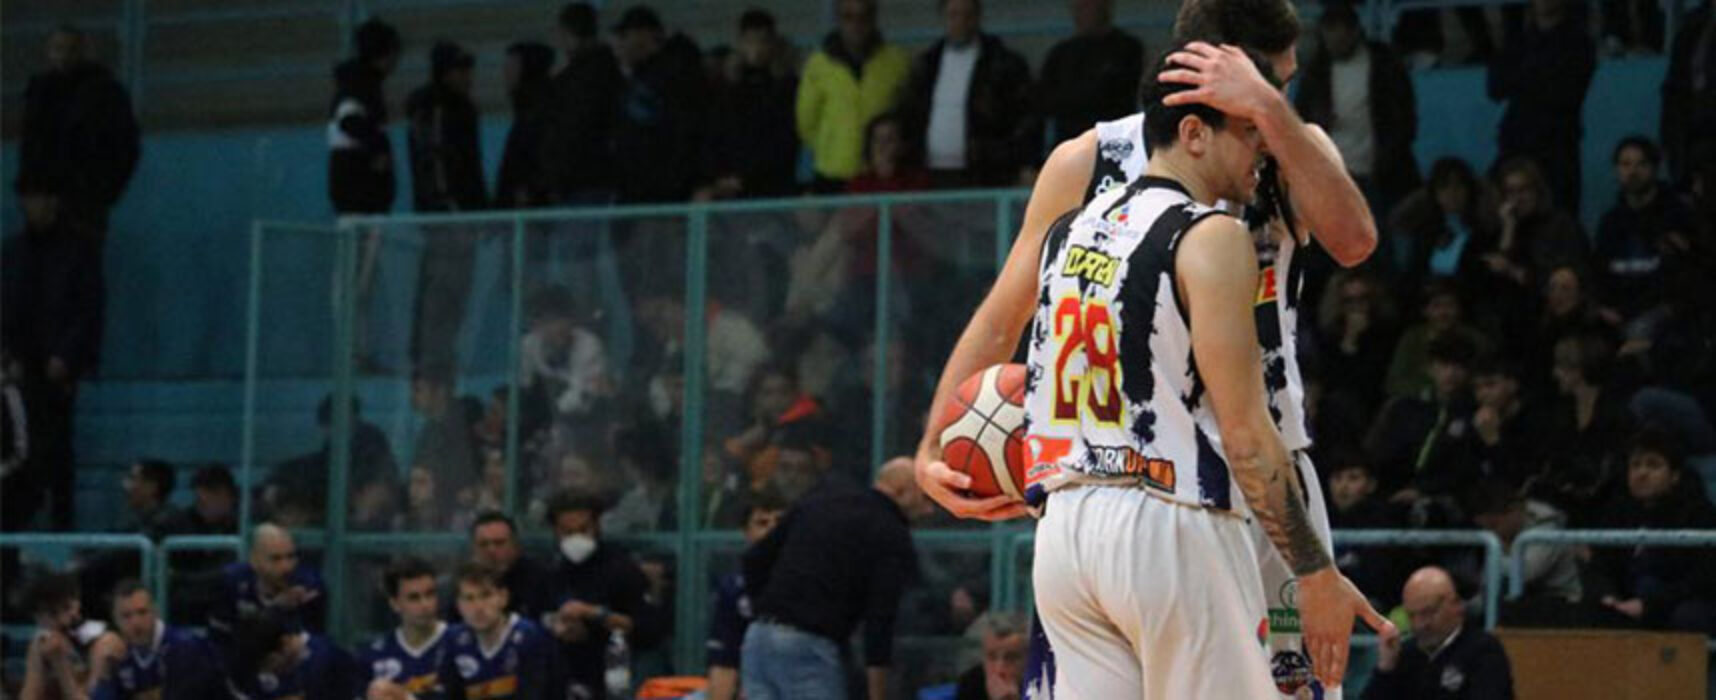 Basket, i Lions Bisceglie tornano alla vittoria contro la Virtus Cassino / CLASSIFICA